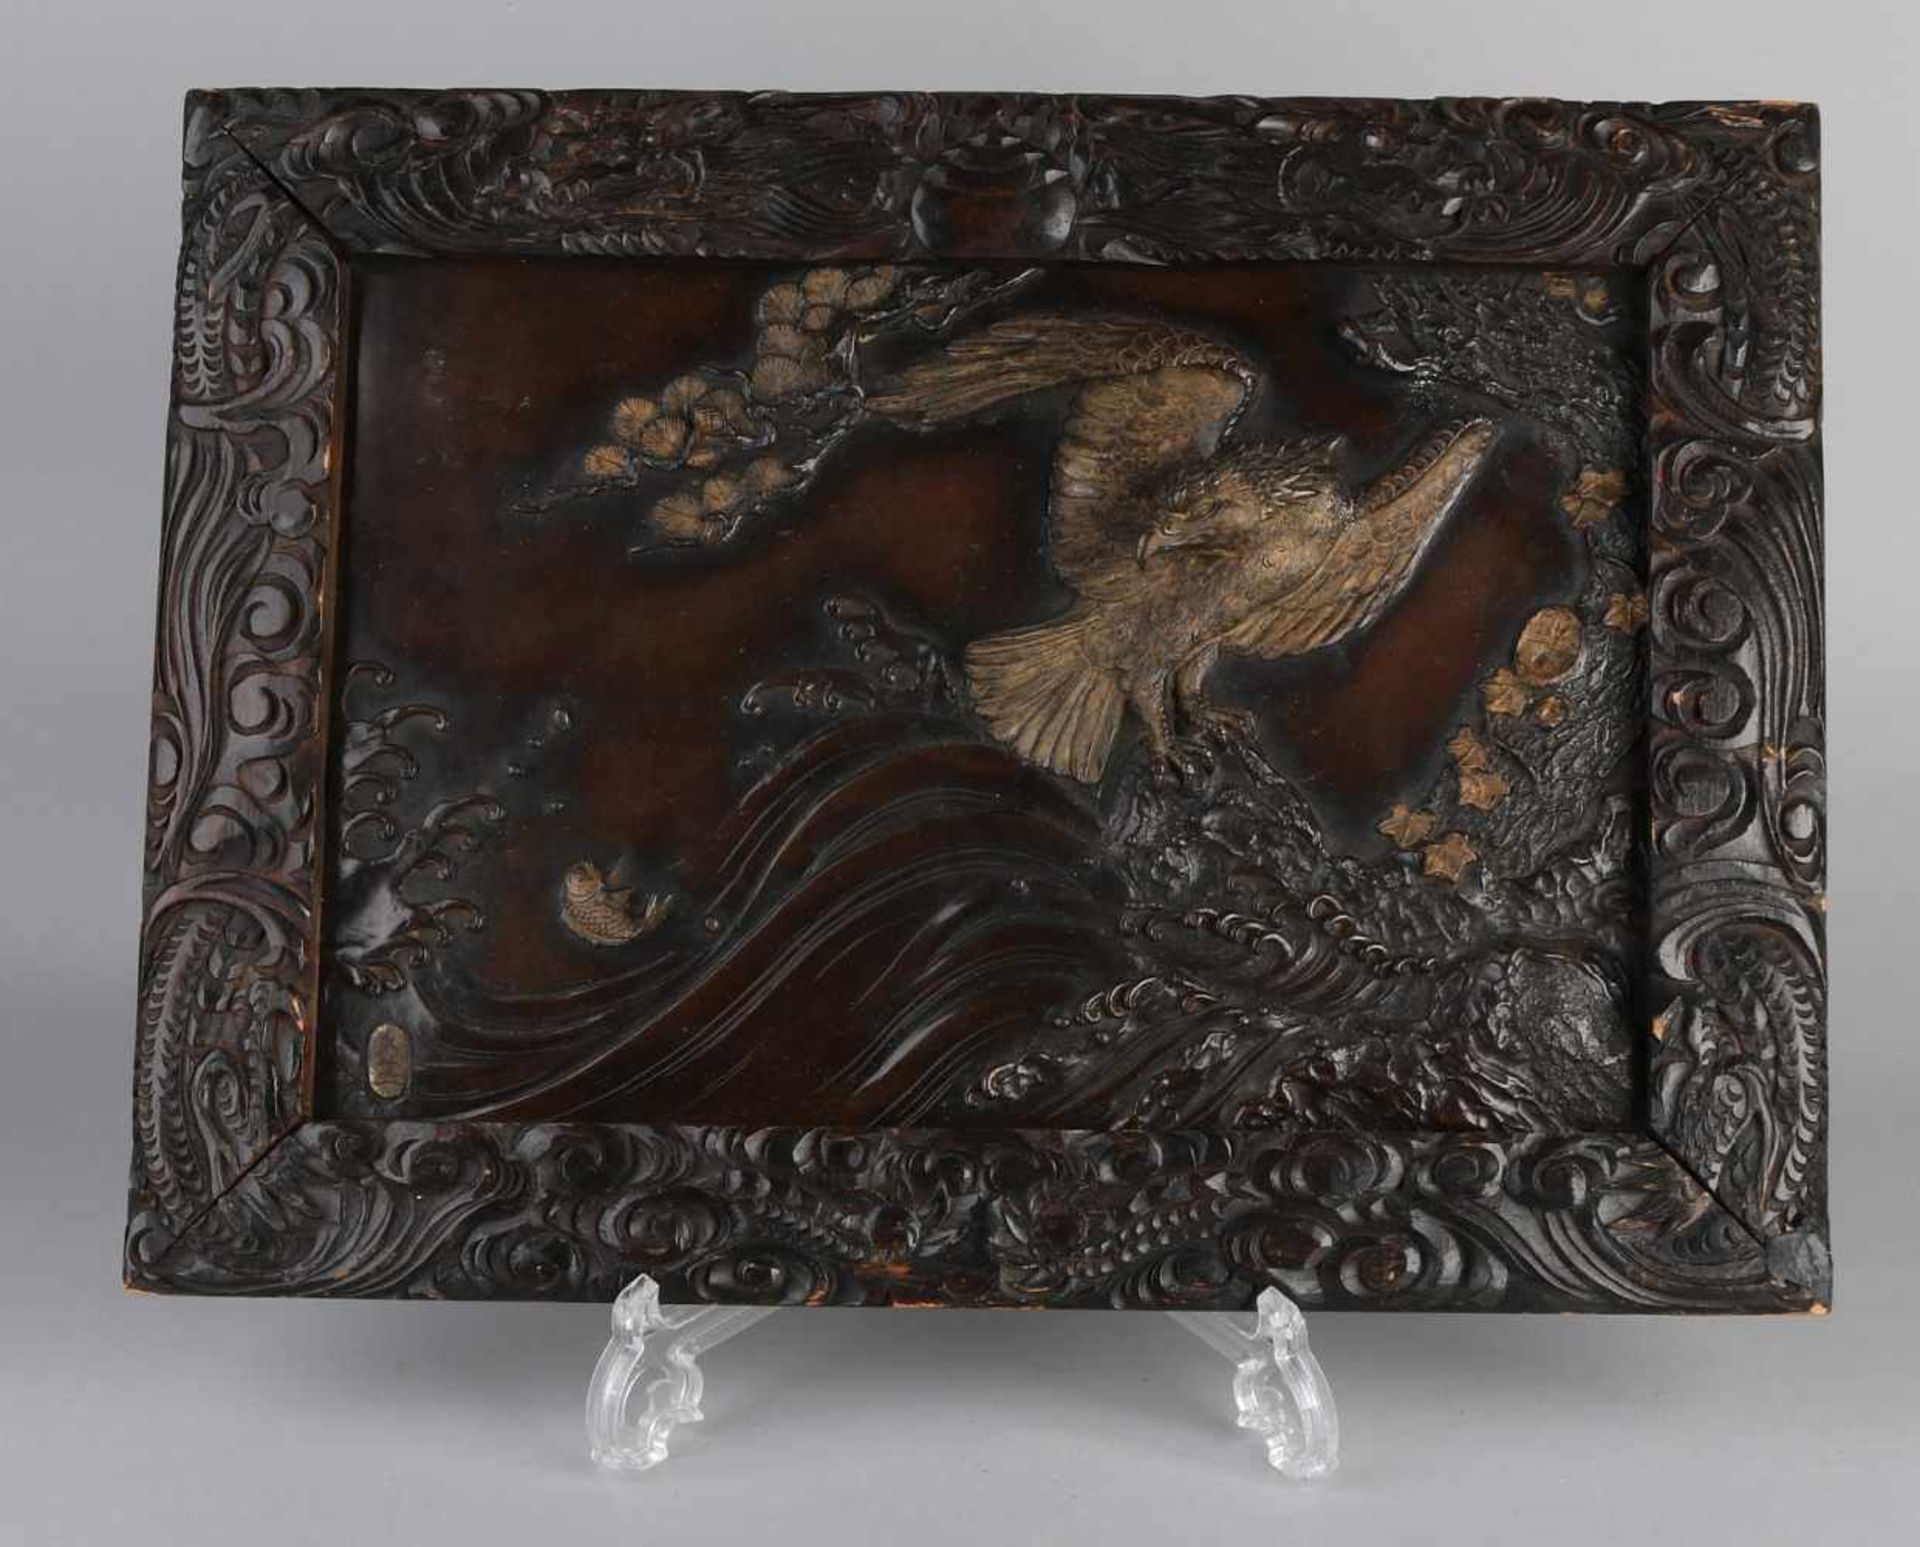 Antike japanische Bronzetafel in holzgeschnitztem Rahmen. Signierte Plakette mit Fischadler und